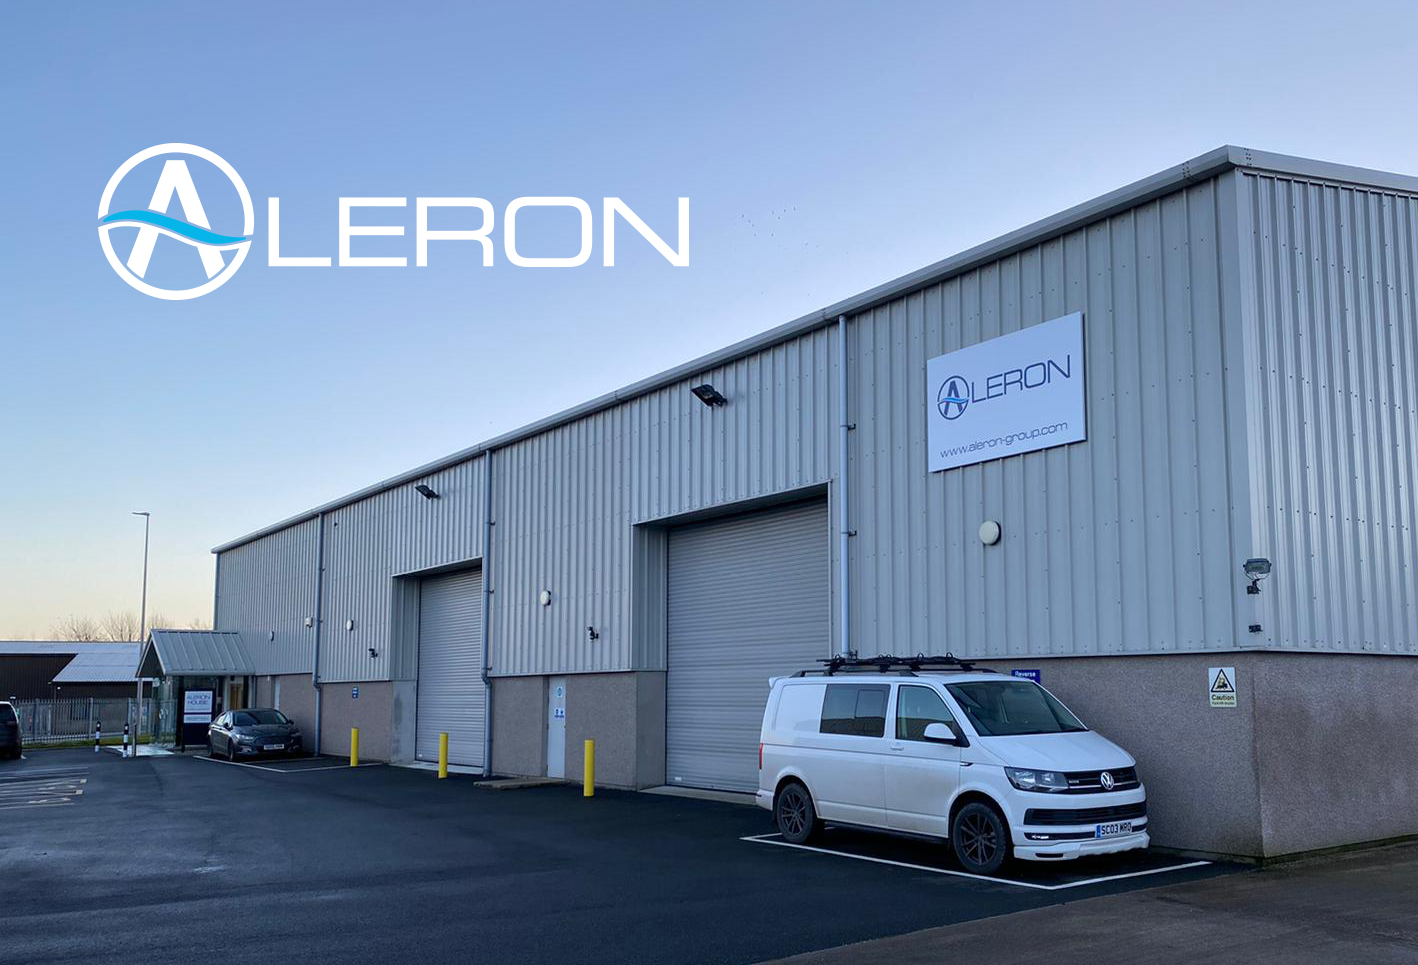 Aleron new headquarters